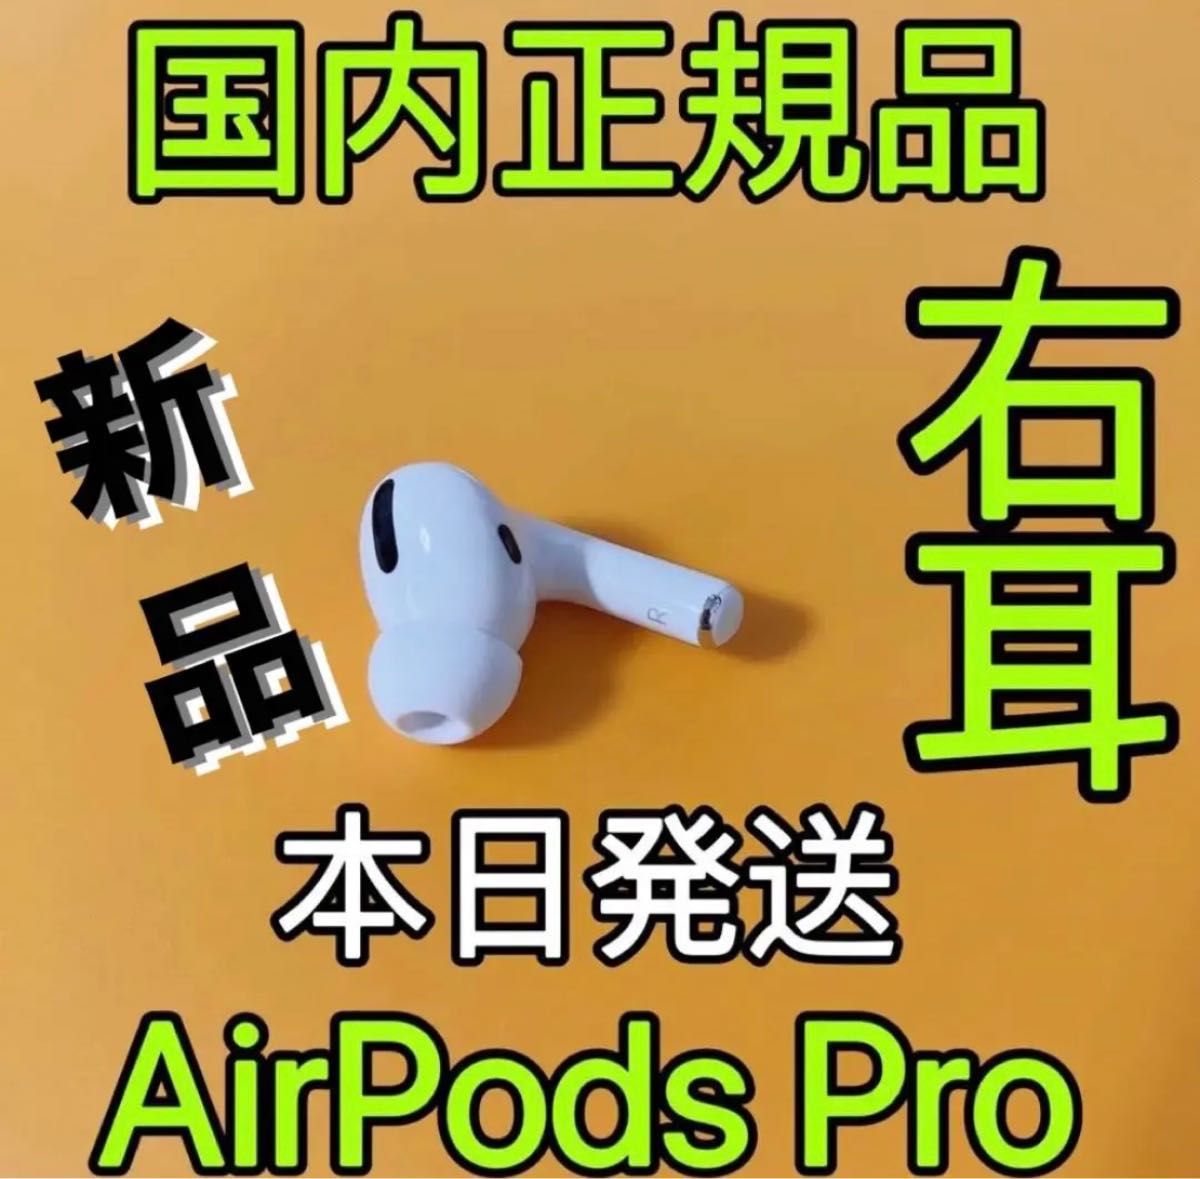 エアーポッズ プロ AirPods Pro Apple国内正規品 新品右耳のみ｜PayPay